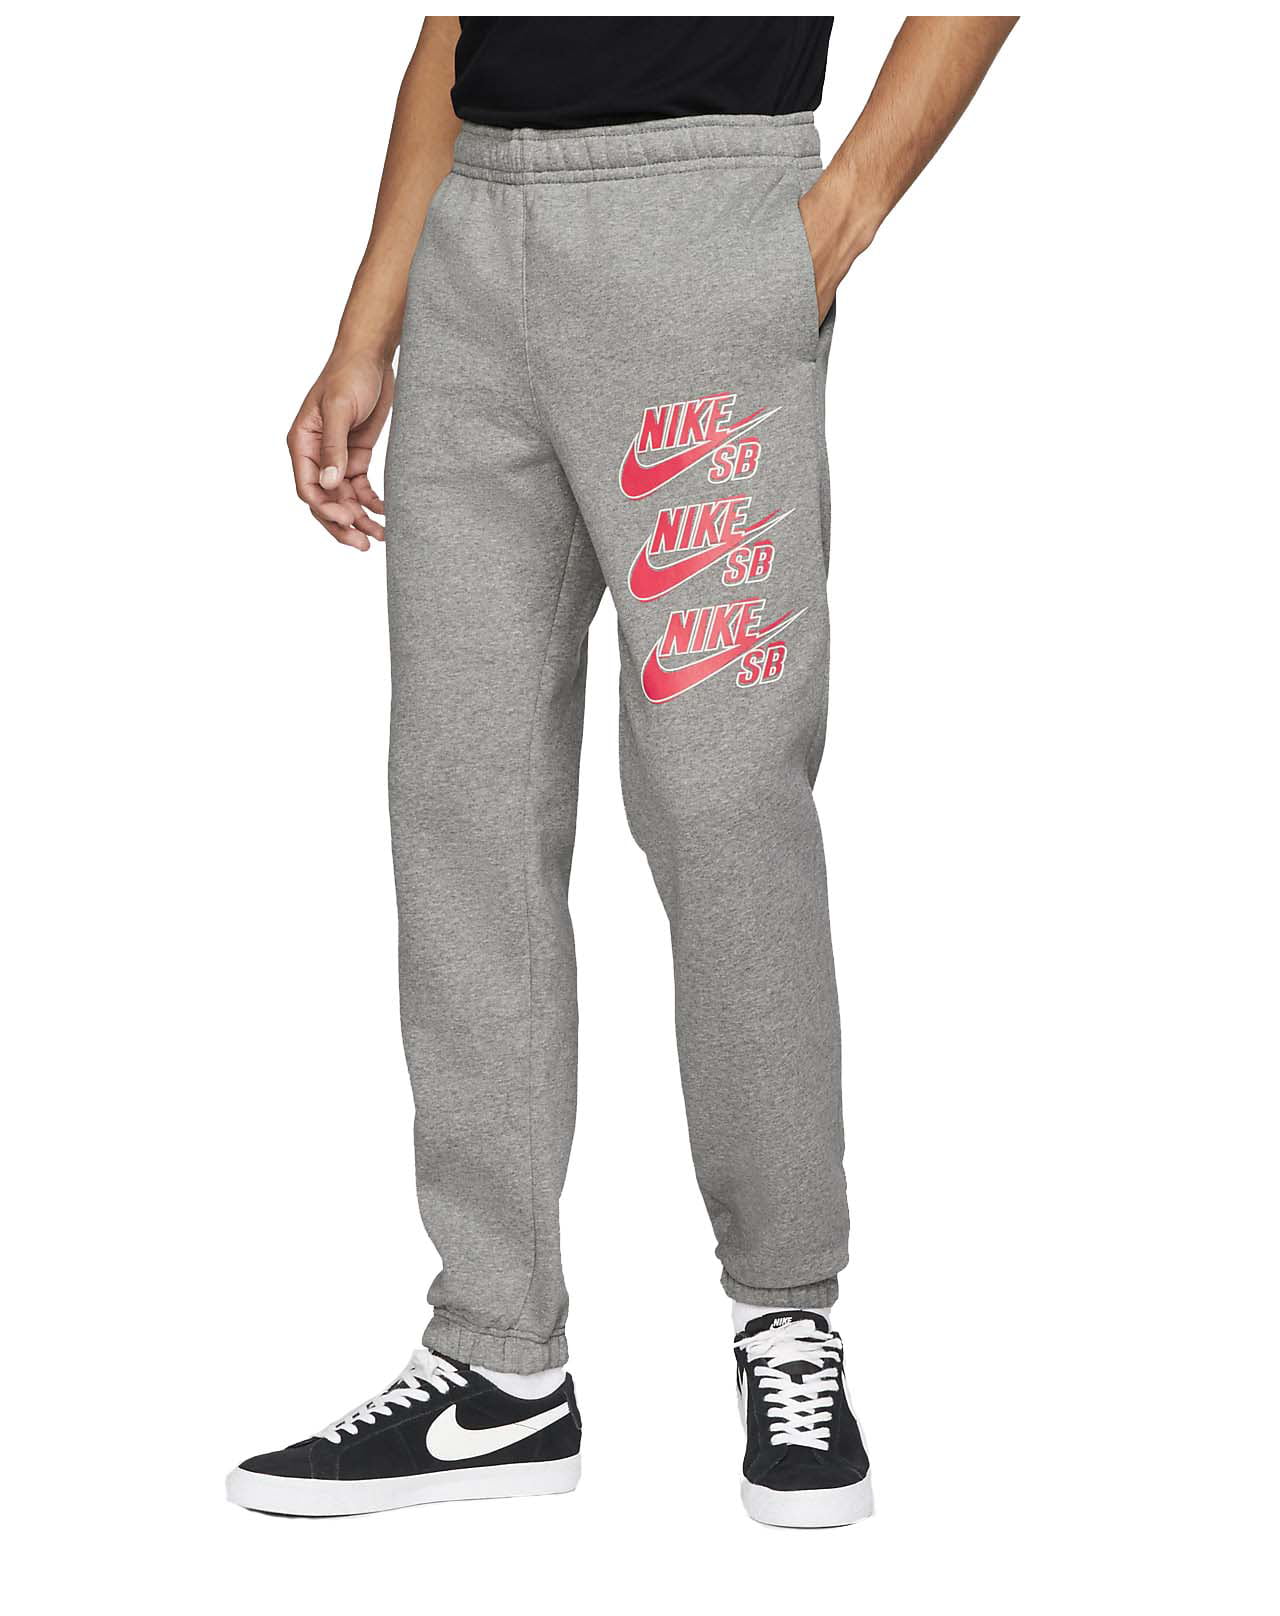 cobre fácil de lastimarse Sip Nike Men's SB Icon Fleece Skateboarding Pants (X-Large, Heather Grey) -  Walmart.com